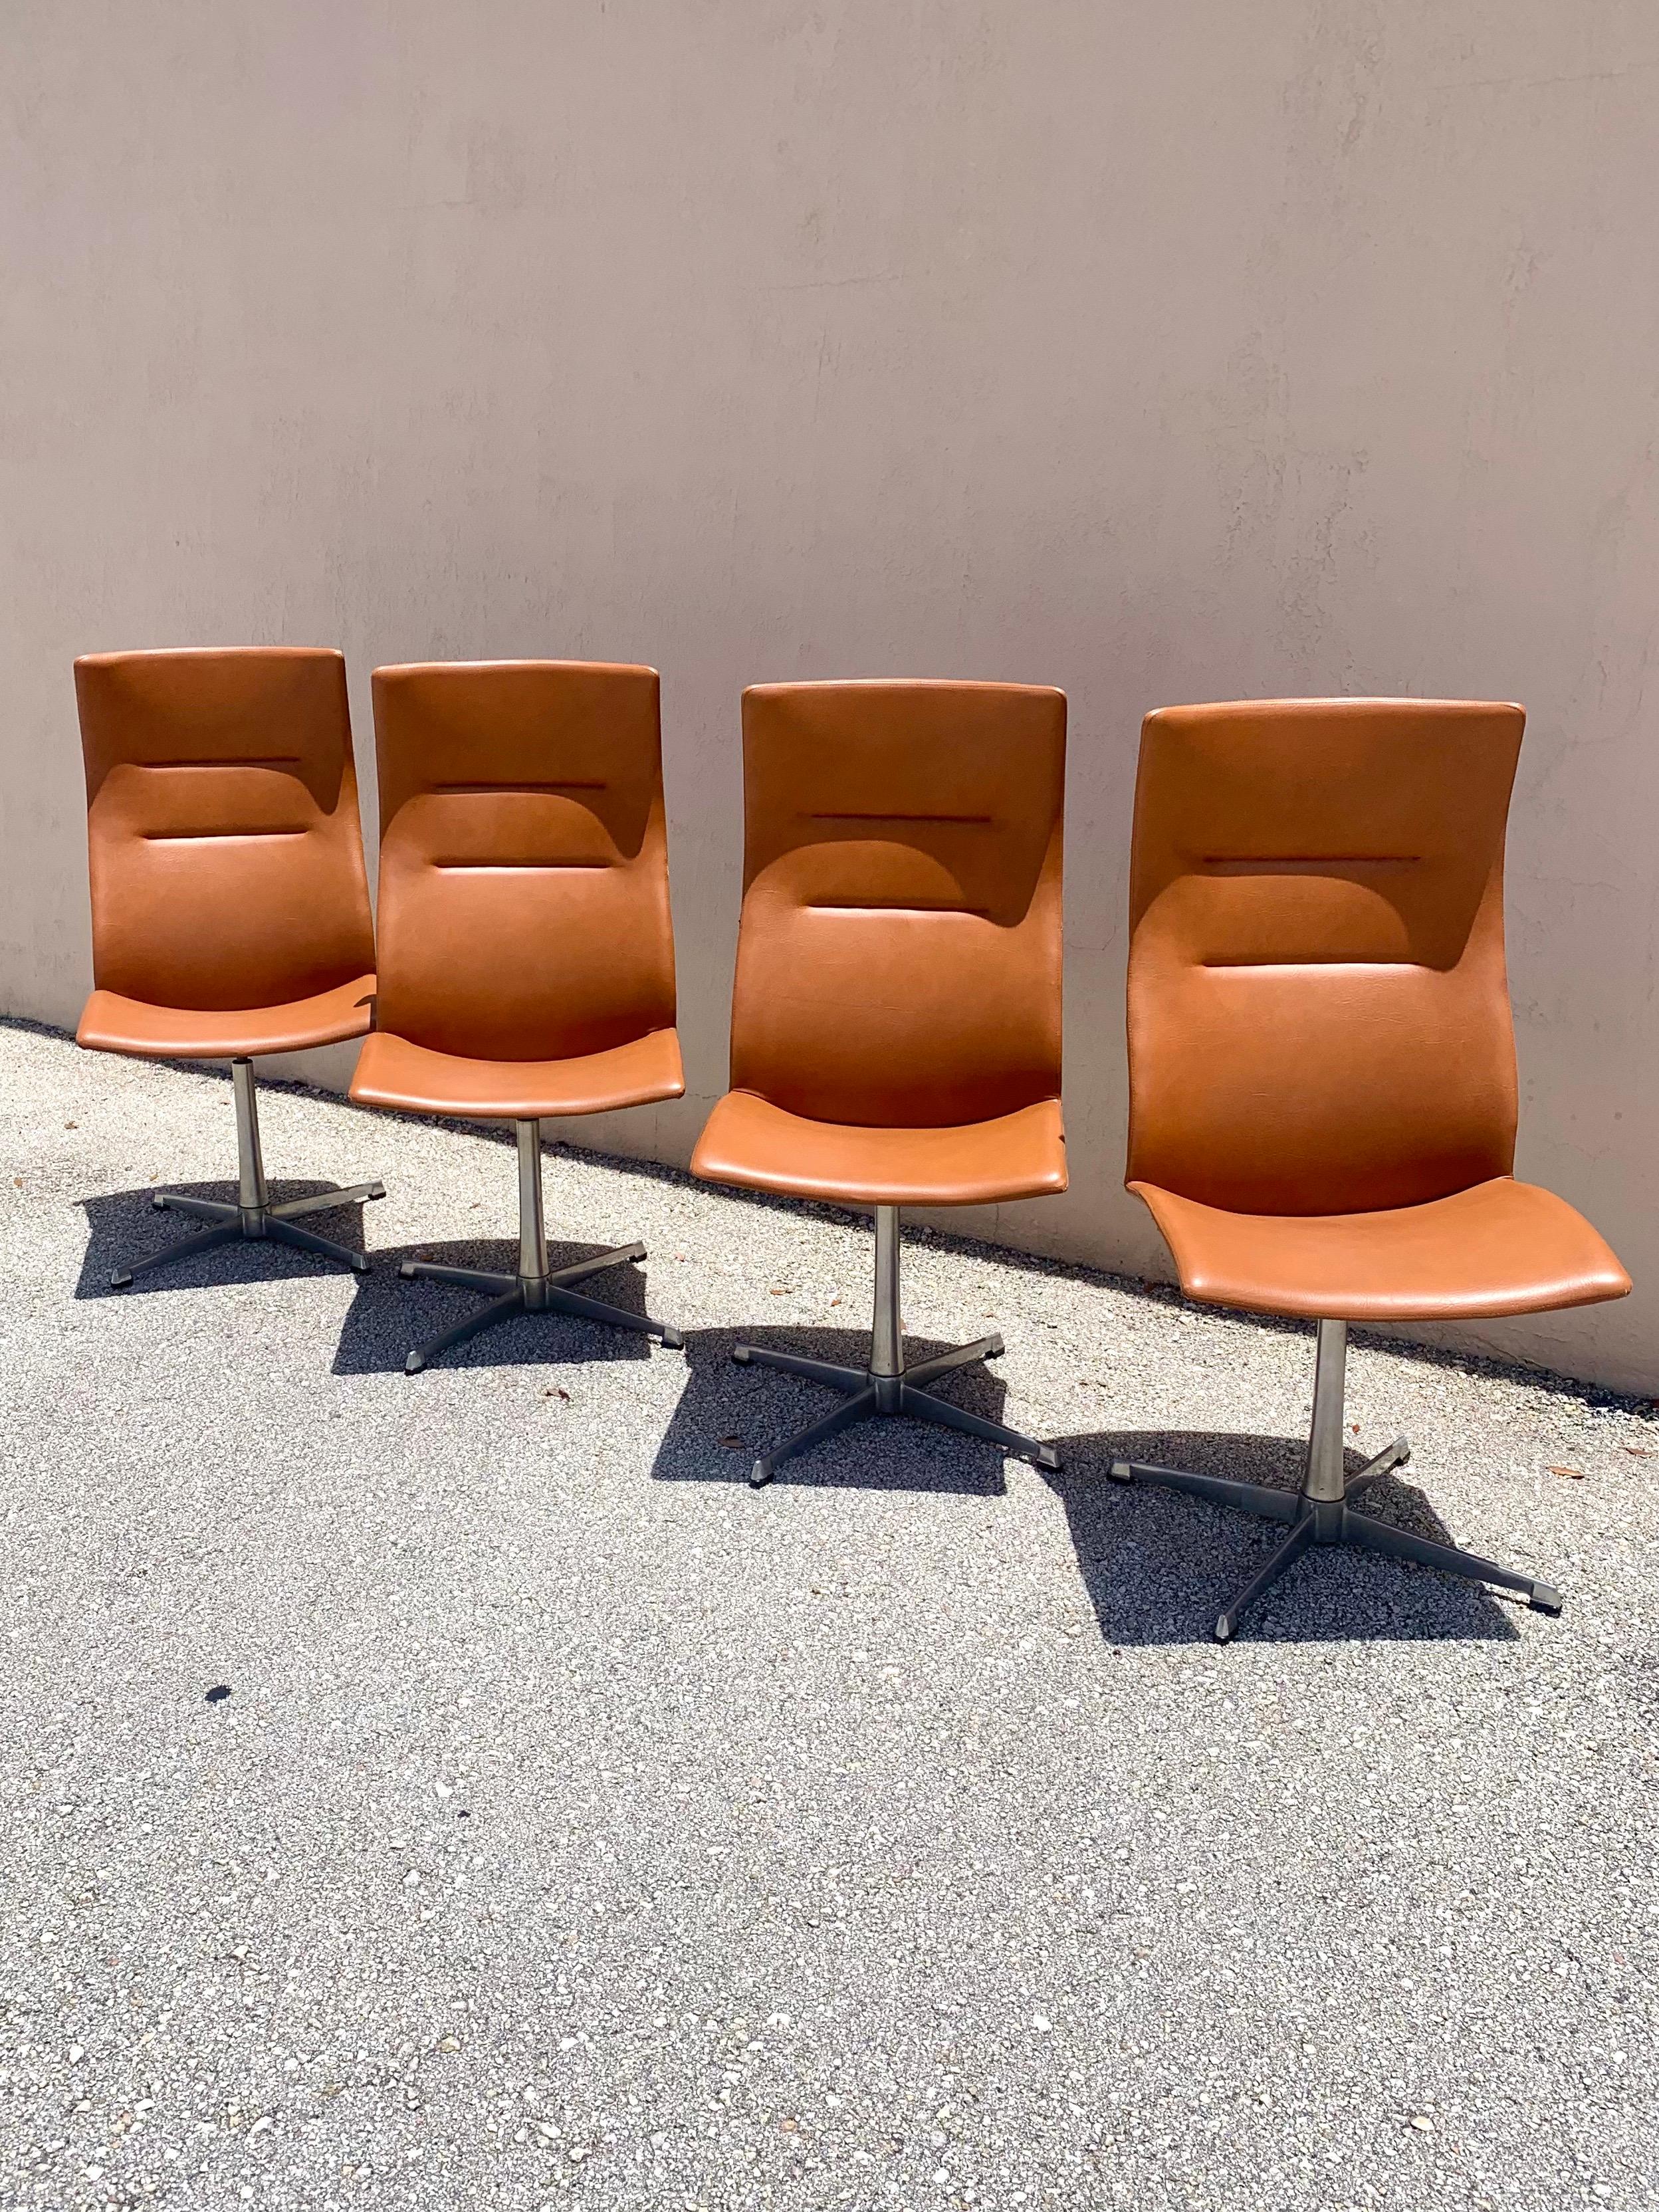 Tolles Set aus 4 Esszimmerstühlen von Overman. Hergestellt in Schweden. Hohe ergonomisch geformte Rückenlehnen, die von einem 4-Stern-Drehfuß aus Aluminium getragen werden. Cognacfarbenes, hochwertiges Vinyl. Sehr bequeme und stützende Sitze.